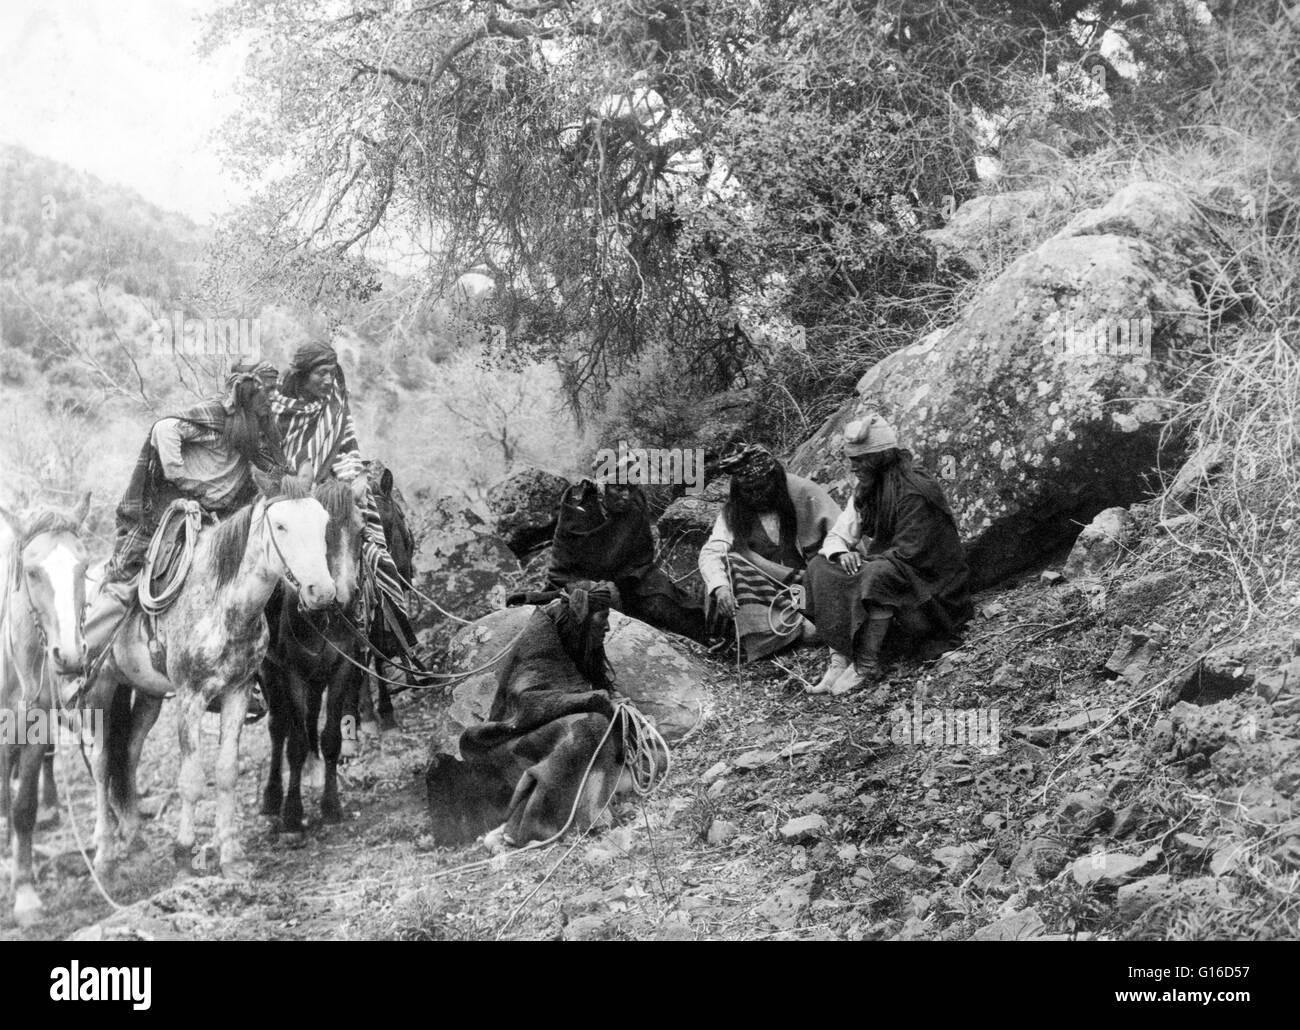 Titolo: 'Storytelling' fotografata da Edward S. Curtis, 1906. Un gruppo di uomini di Apache, due a cavallo, altri seduti, ascolto e stare a guardare come un membro del partito è la marcatura del terreno con un bastone. Apache è il termine collettivo per diversi cultur Foto Stock